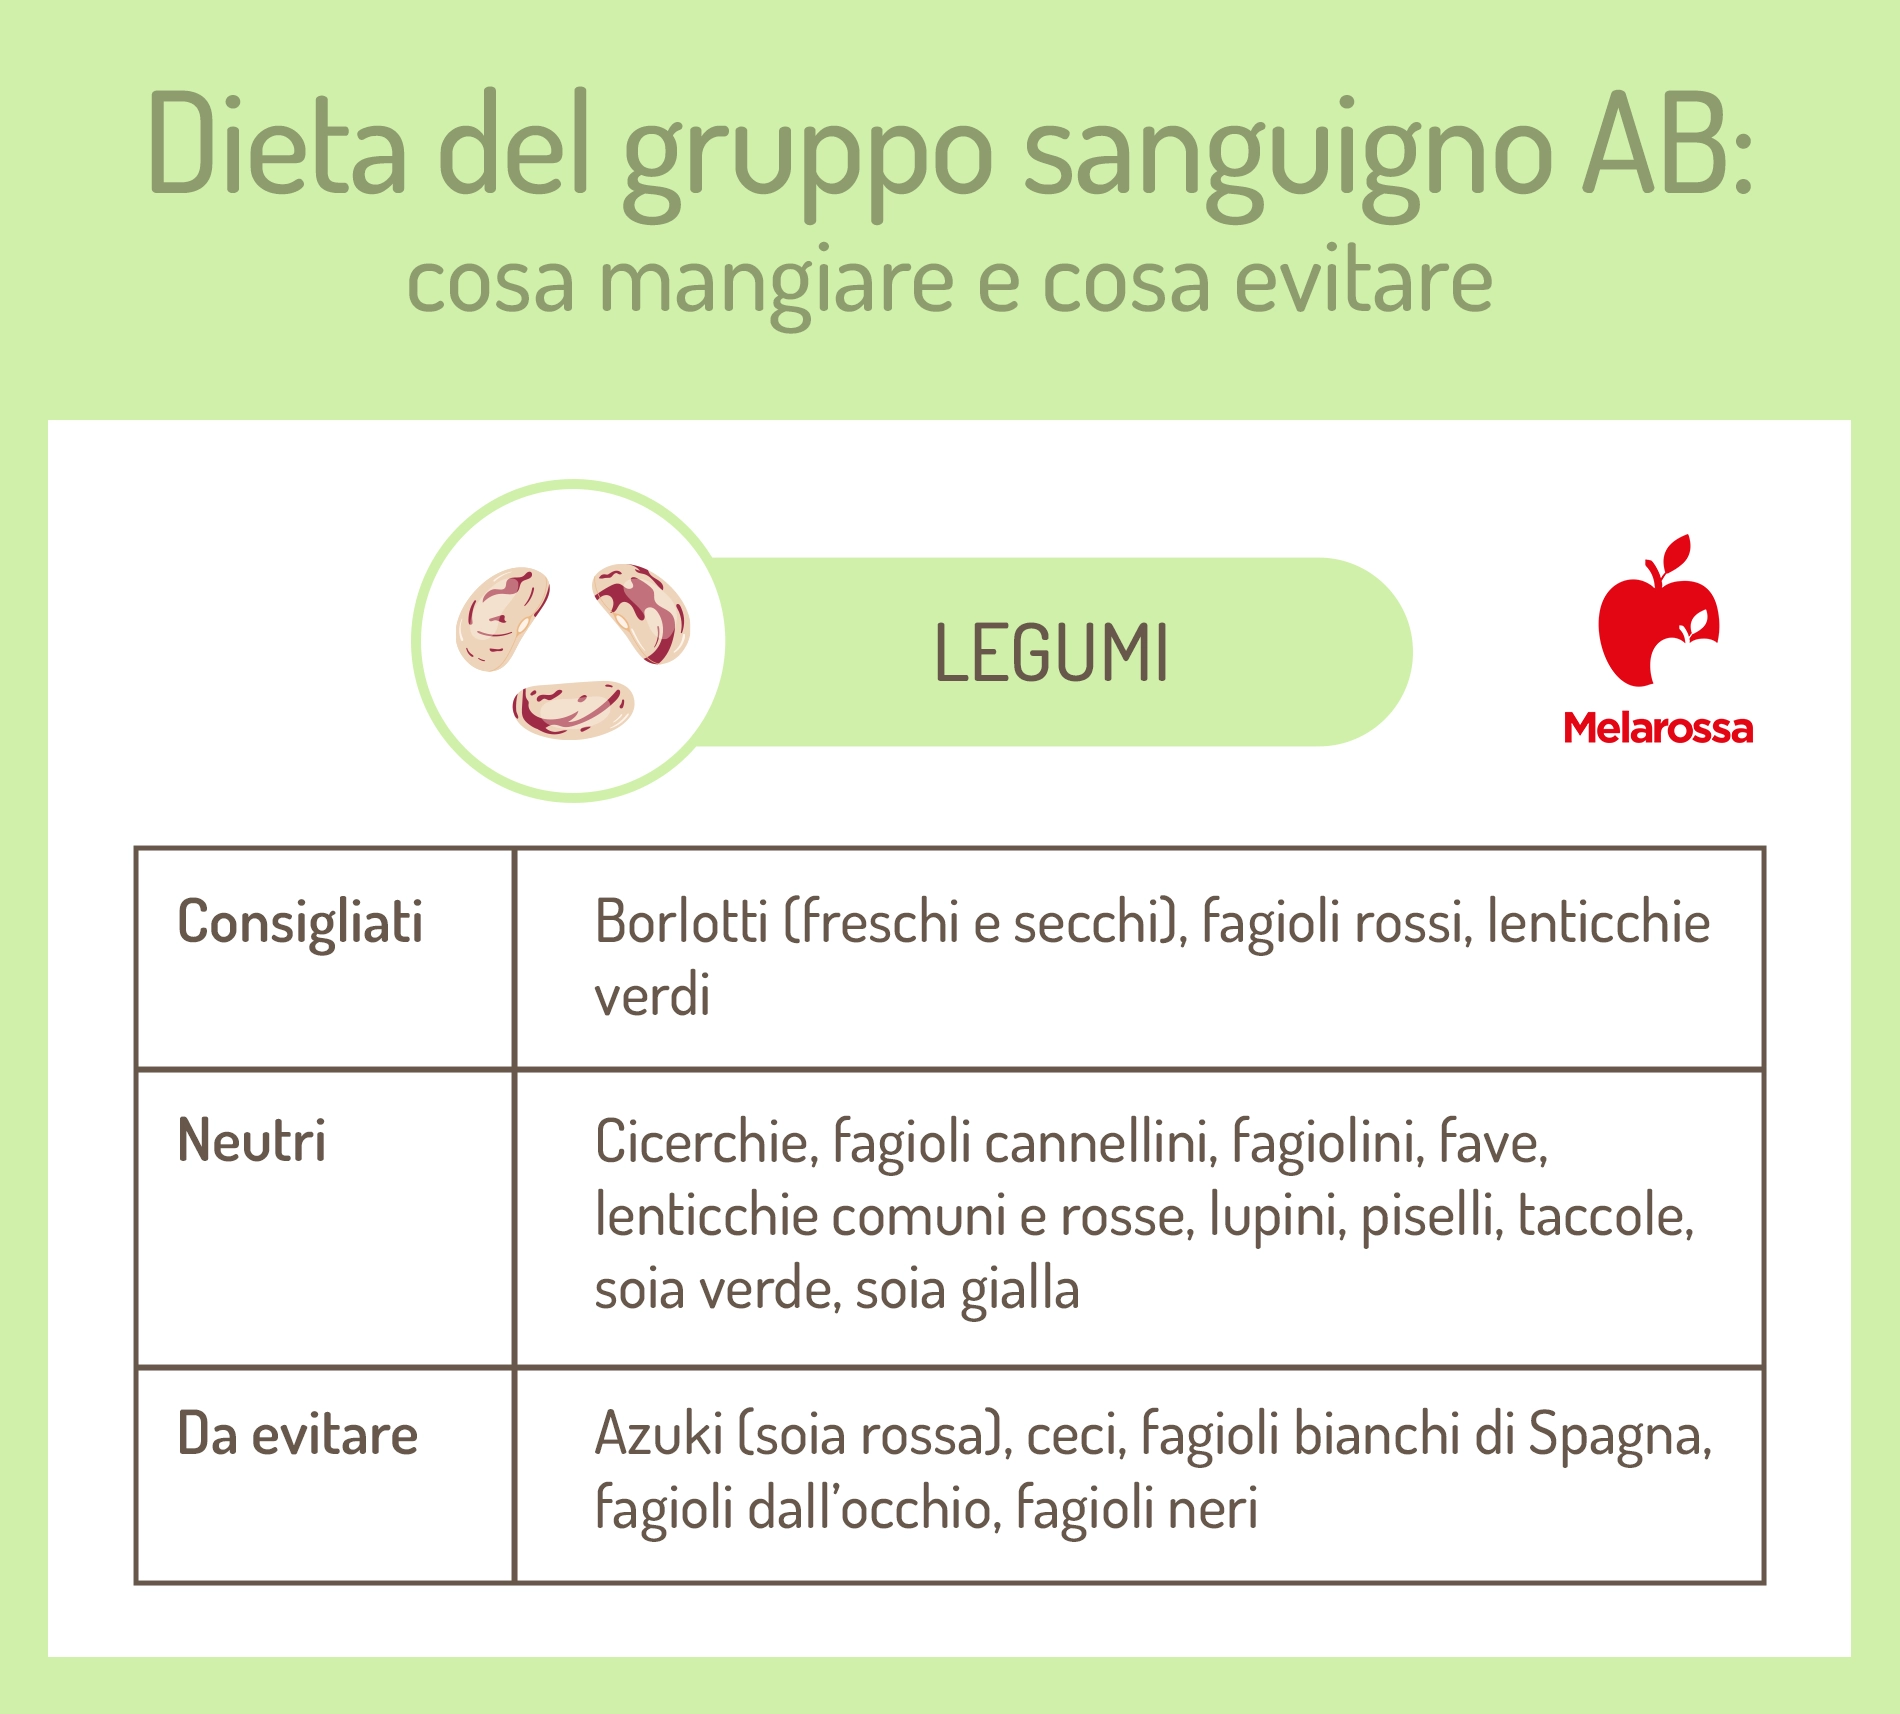 dieta gruppo sanguigno AB: legumi